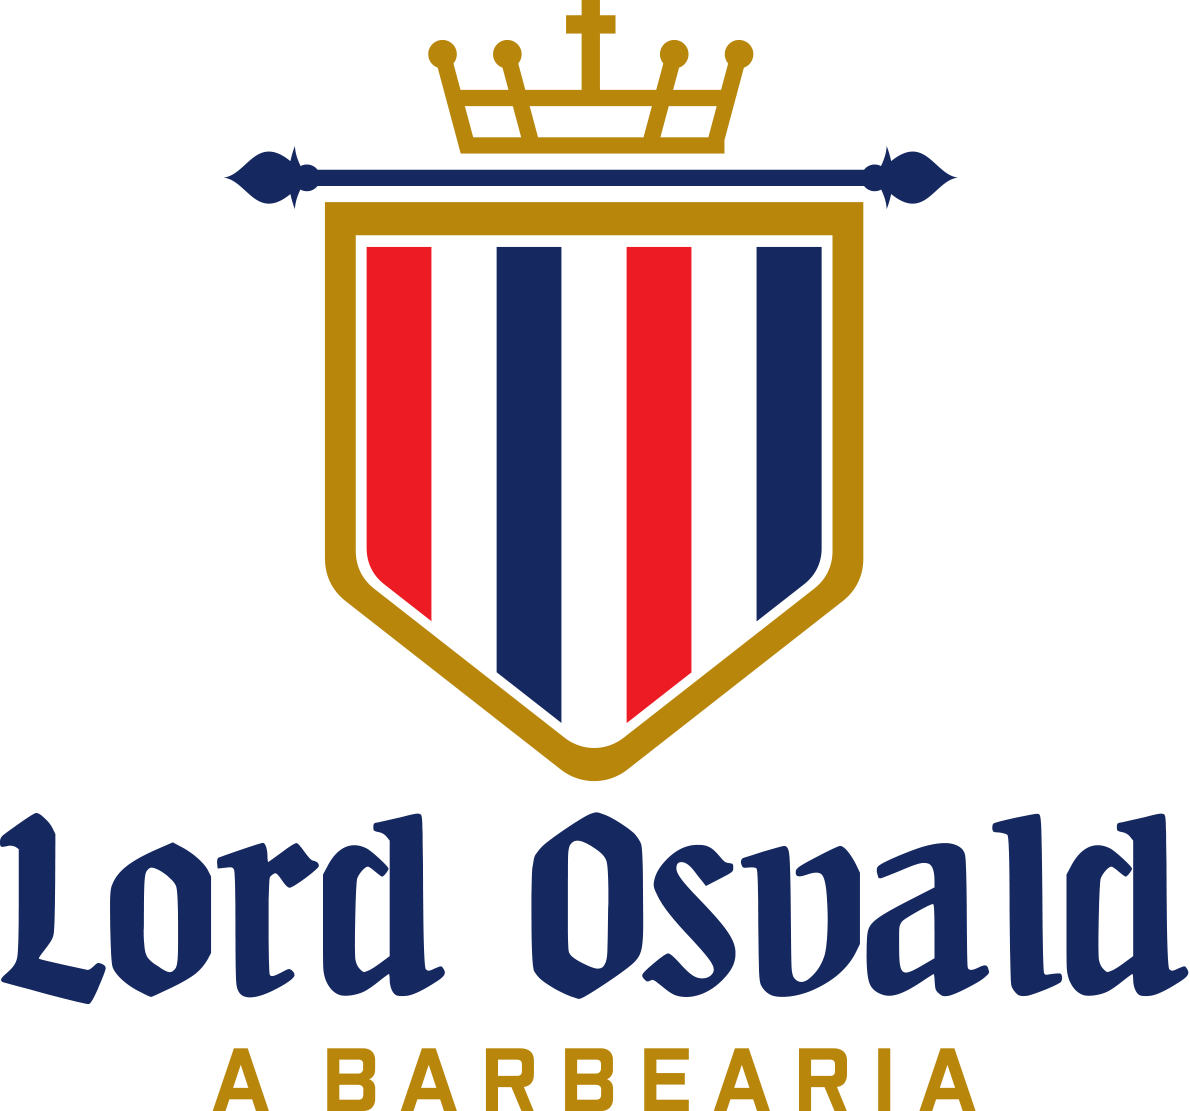 Lord Osvald